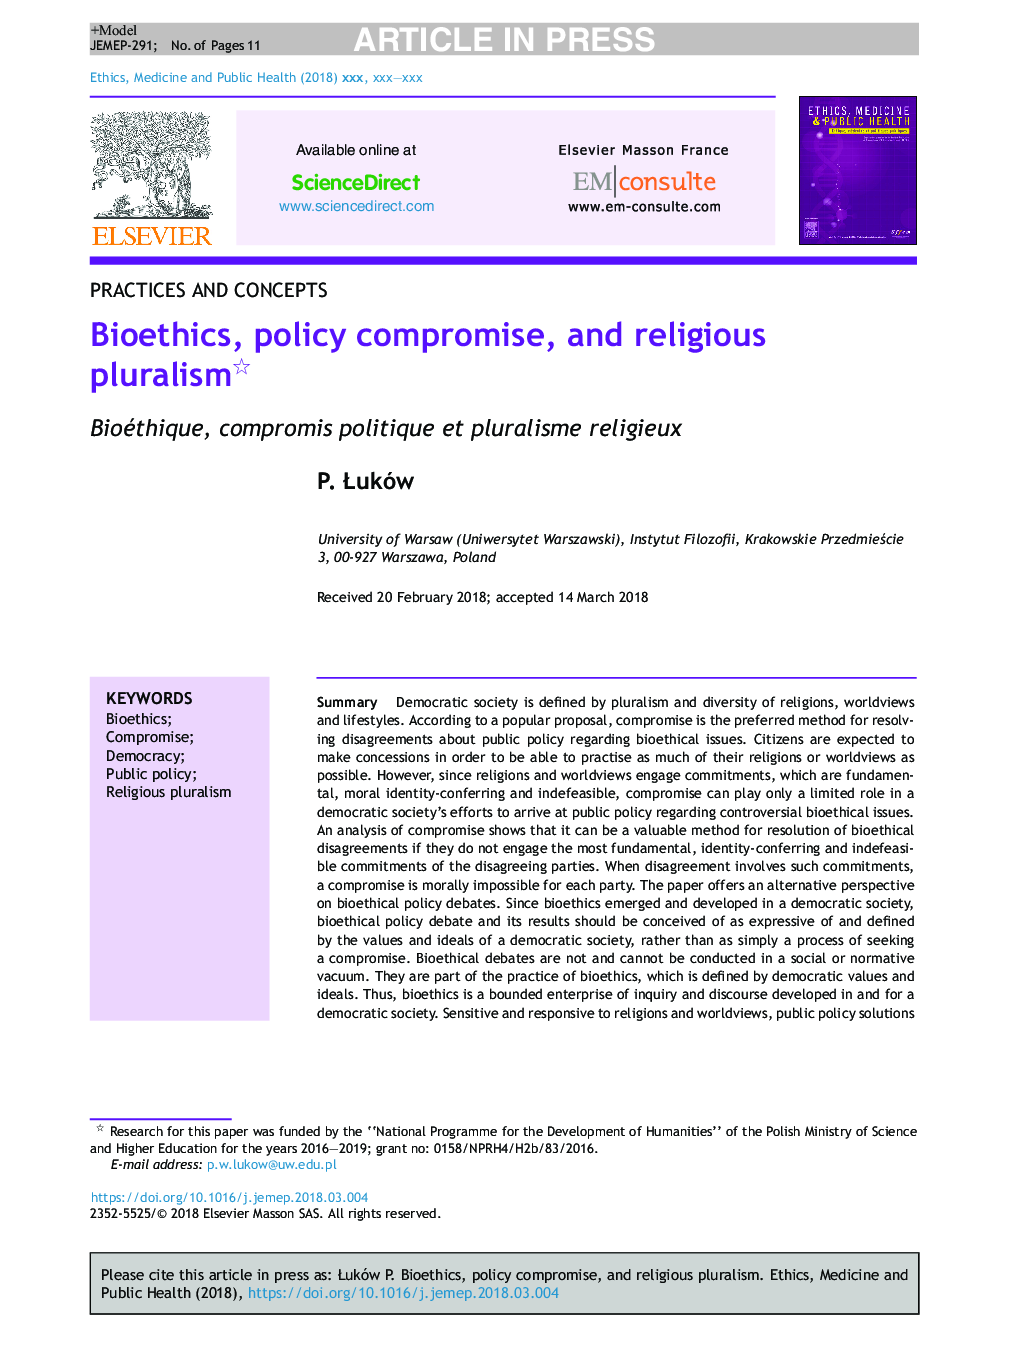 بیوشیمی، مصالحه سیاست، و پلورالیسم مذهبی